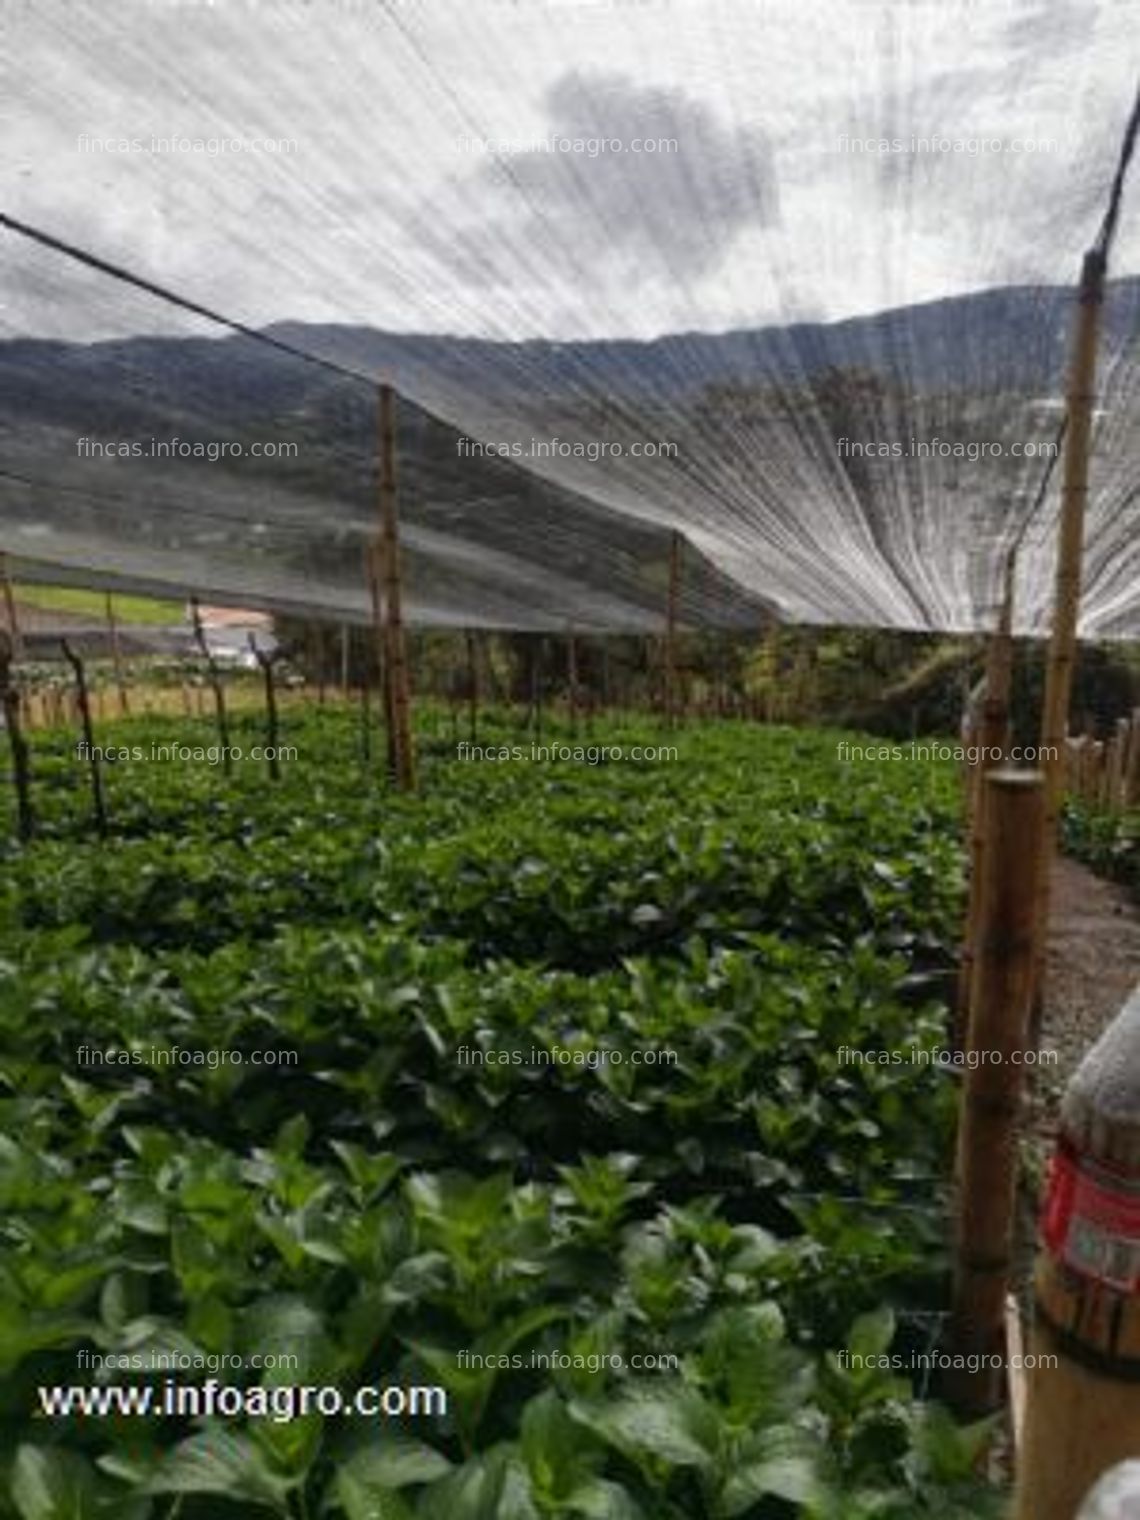 Fotos de Se vende finca productora de hortencia en la unión antioquia colombia